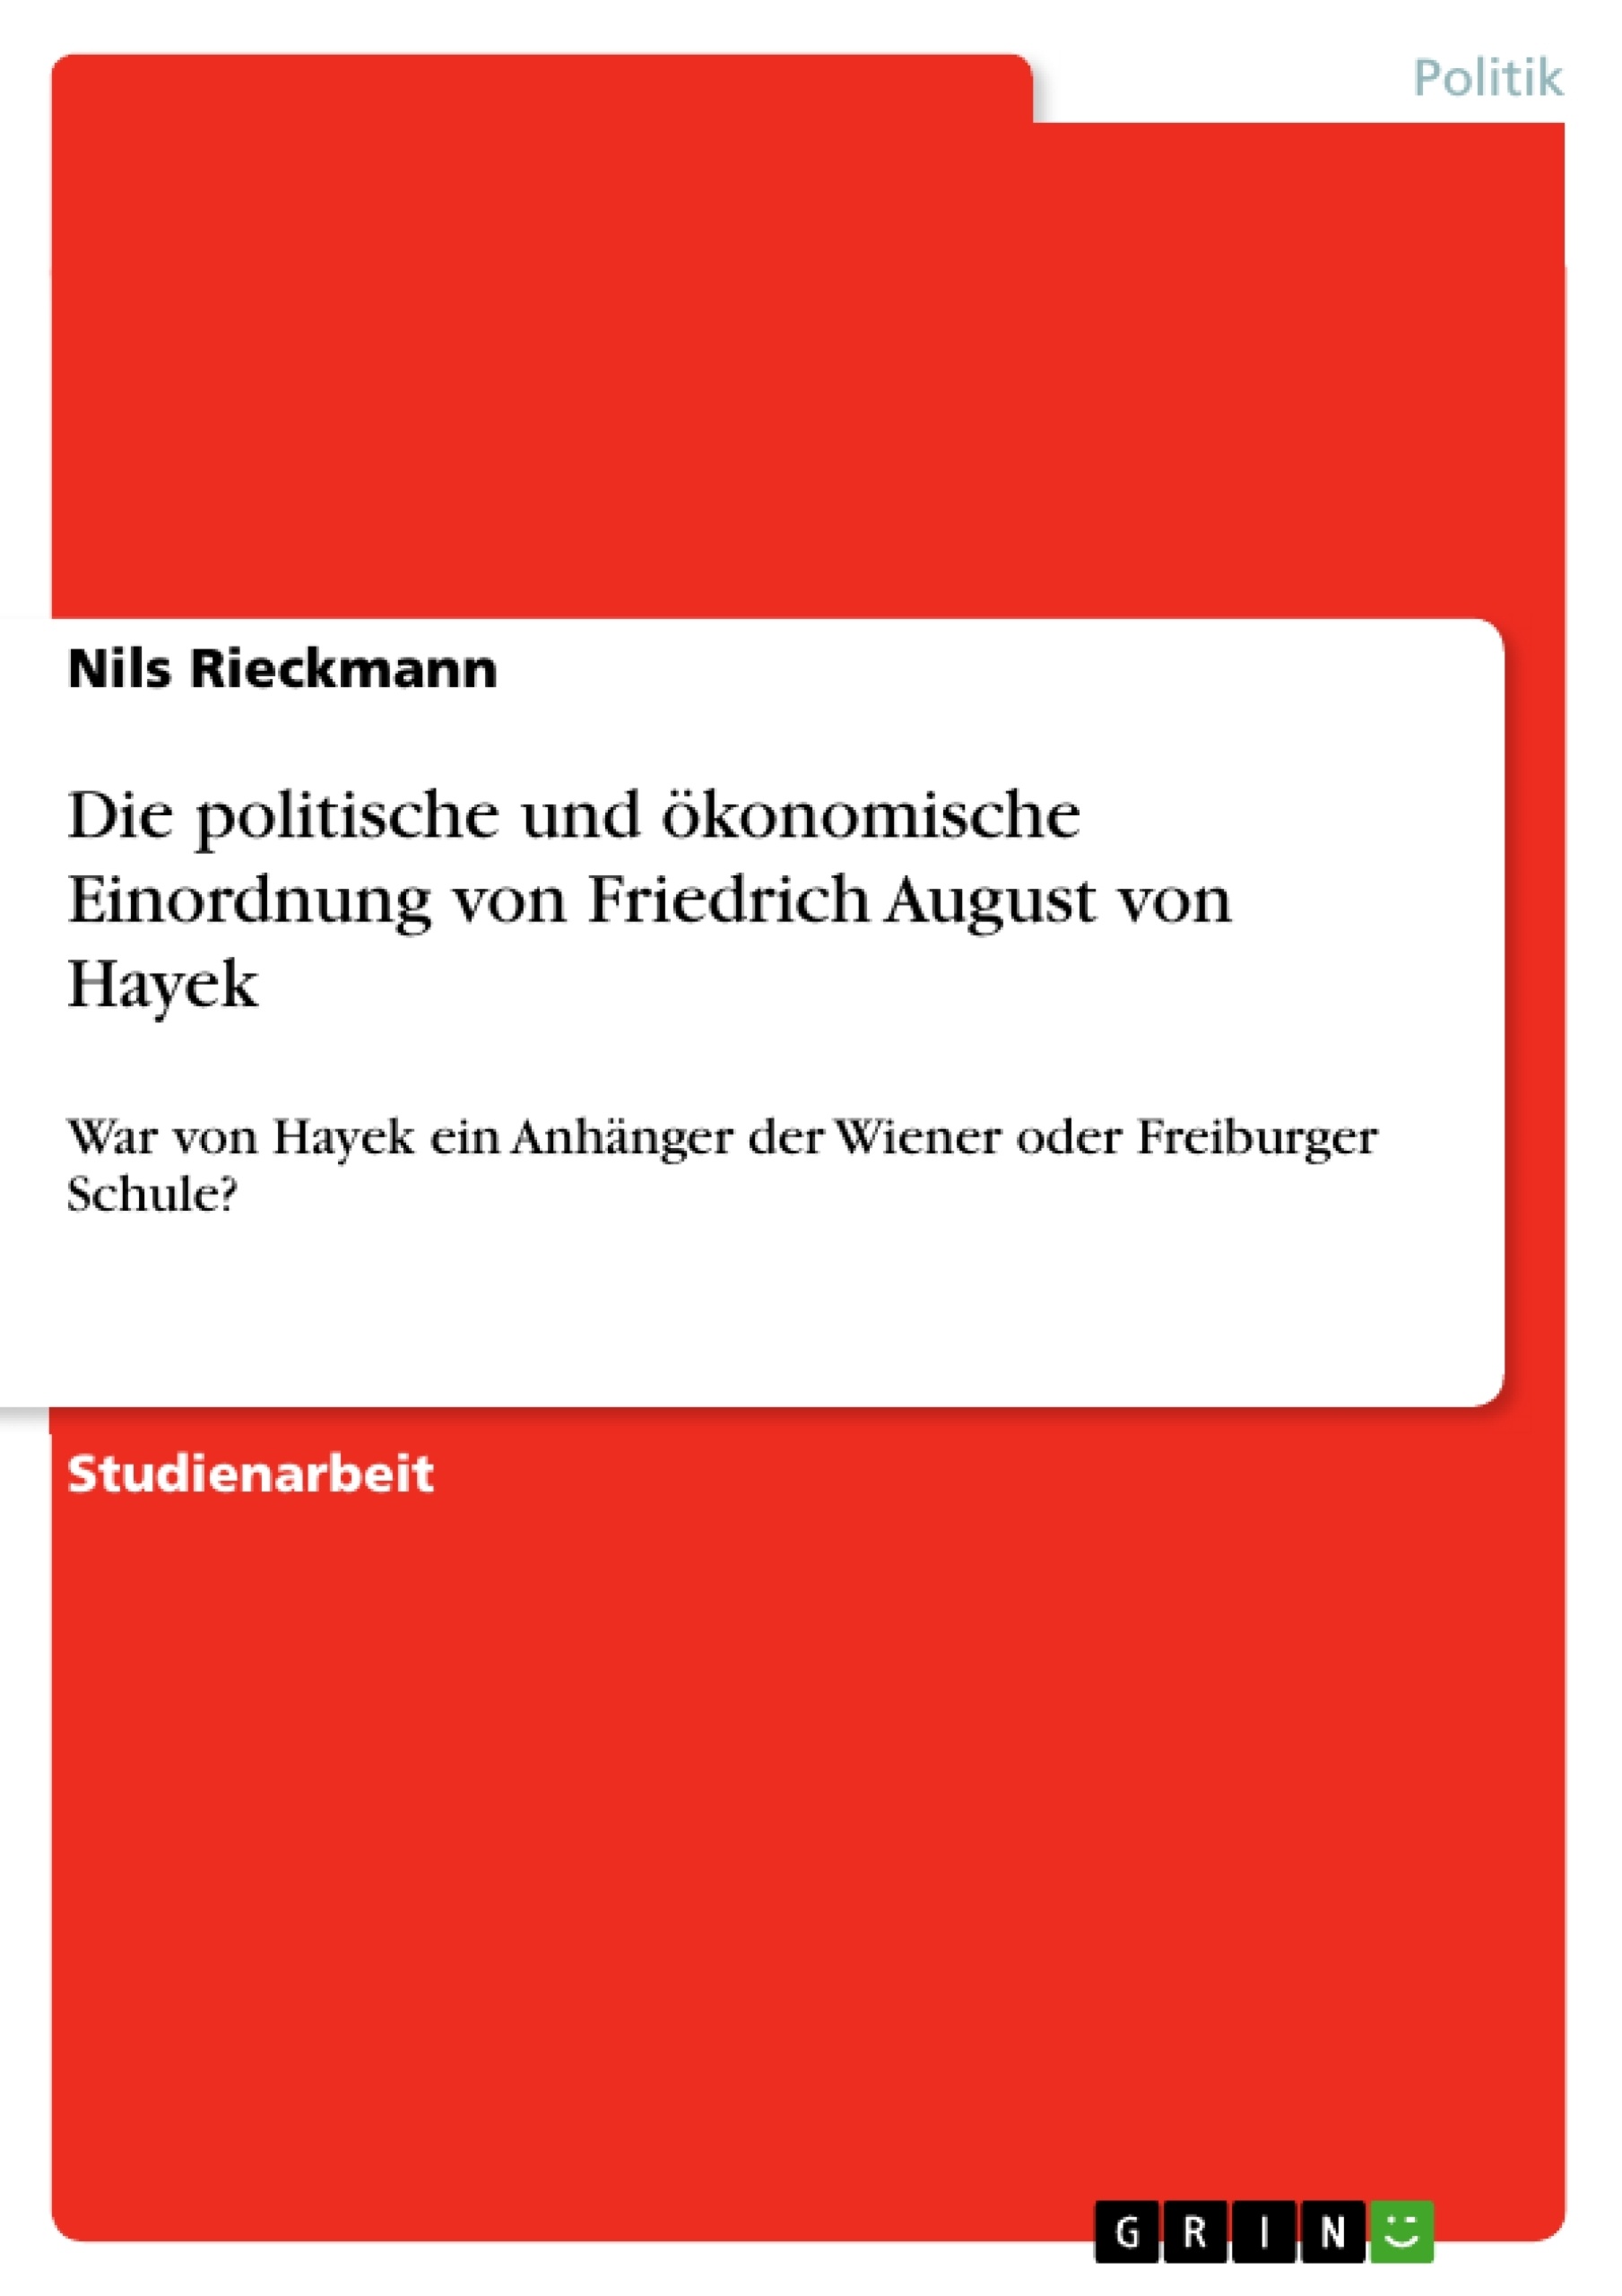 Titre: Die politische und ökonomische Einordnung von Friedrich August von Hayek